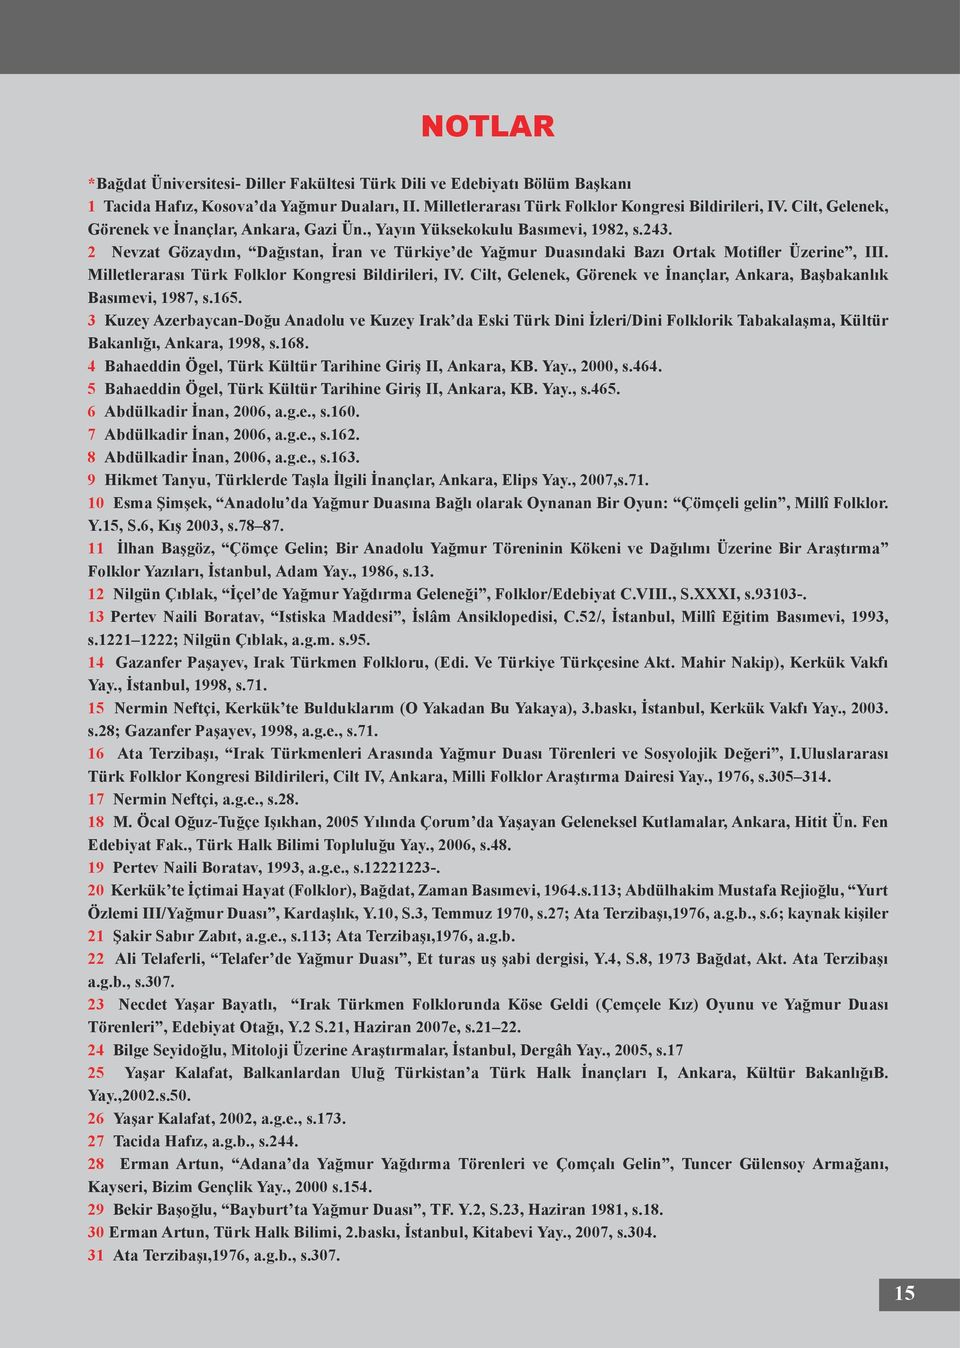 Milletlerarası Türk Folklor Kongresi Bildirileri, IV. Cilt, Gelenek, Görenek ve İnançlar, Ankara, Başbakanlık Basımevi, 1987, s.165.